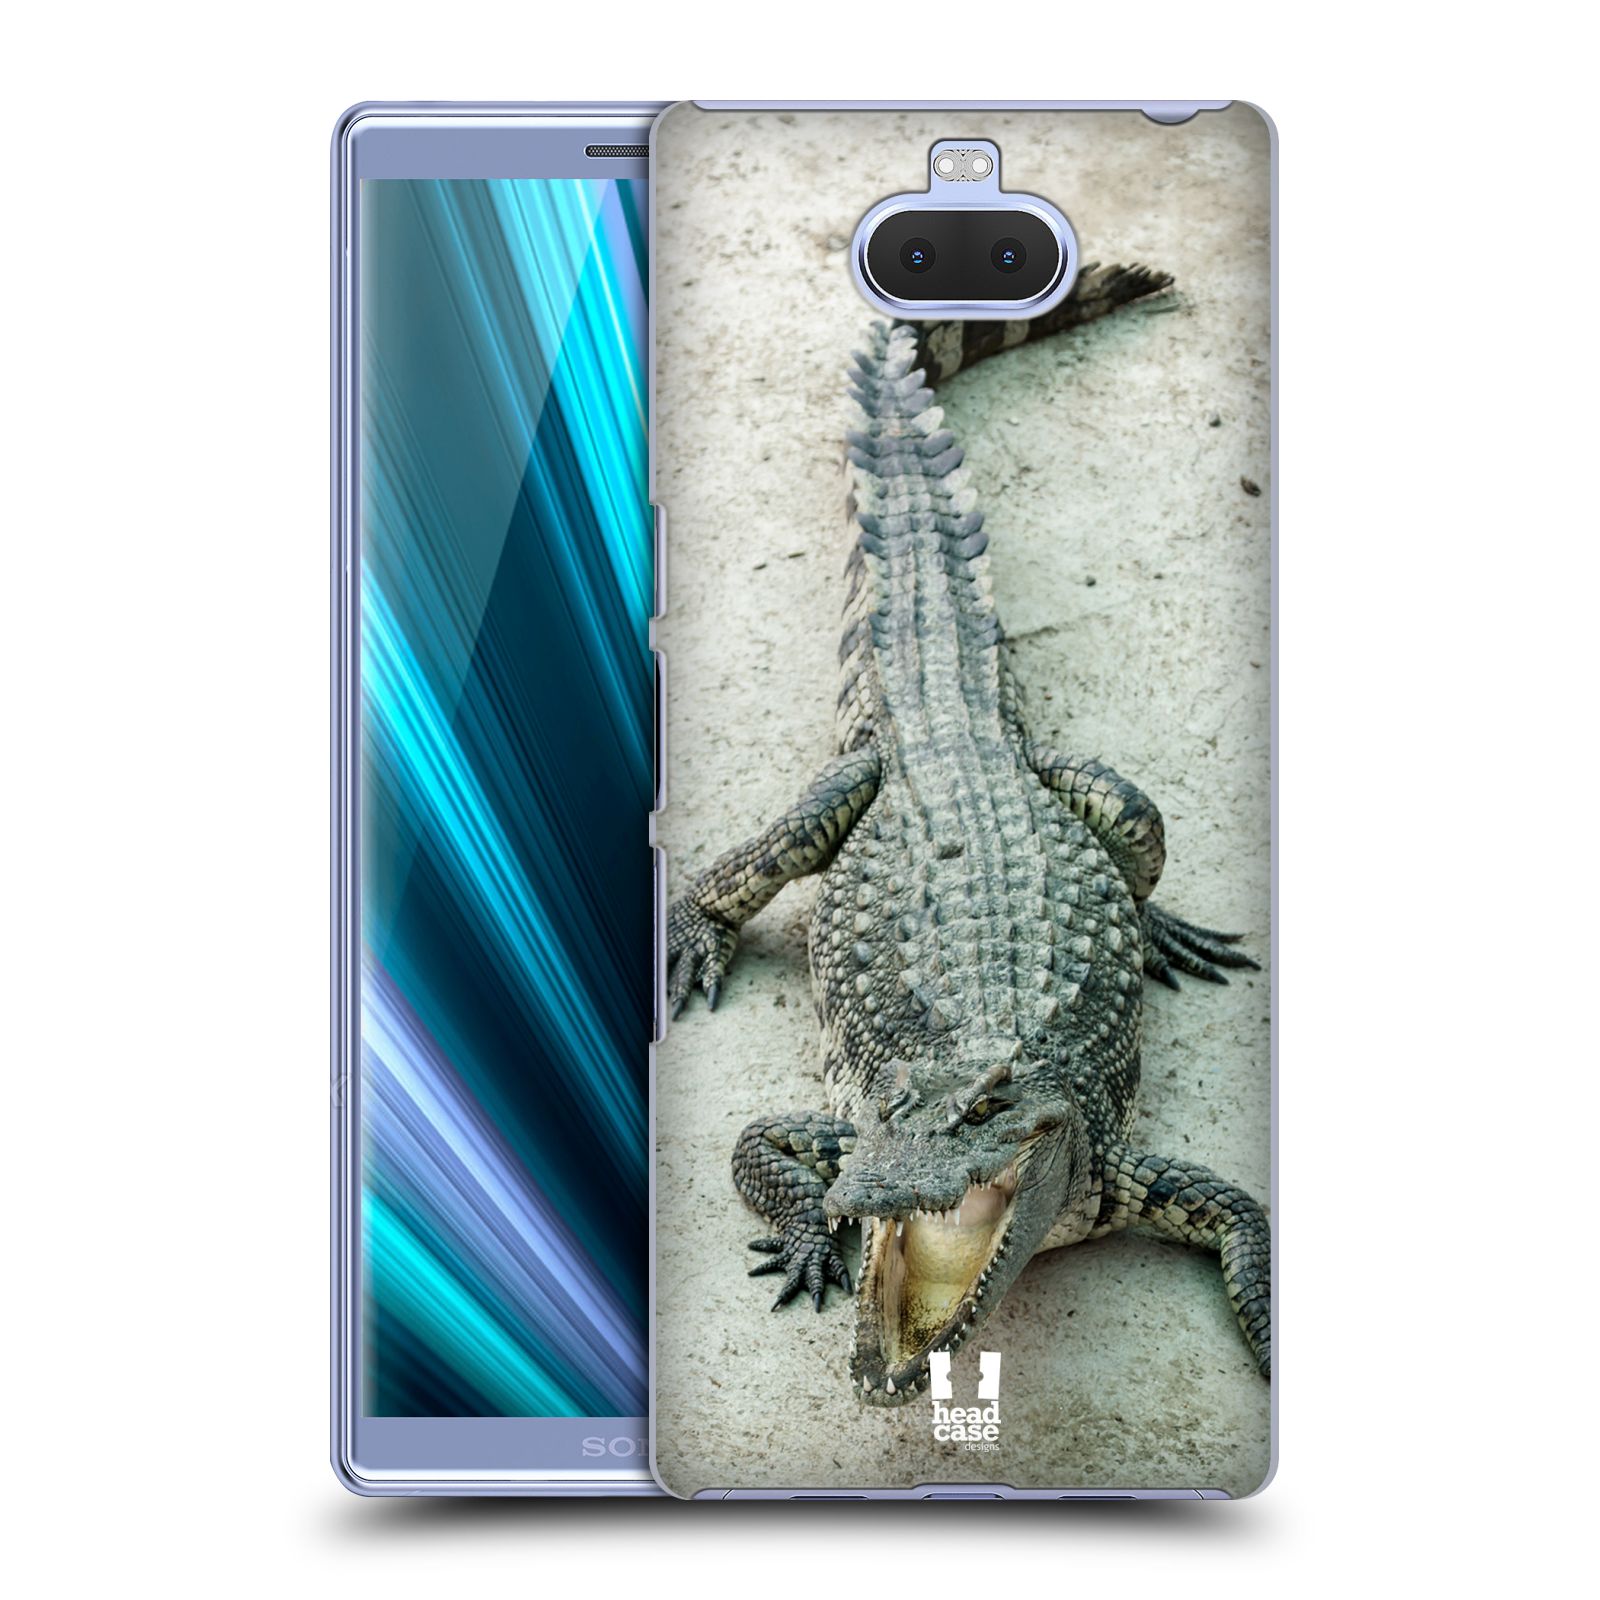 Pouzdro na mobil Sony Xperia 10 - Head Case - vzor Divočina, Divoký život a zvířata foto KROKODÝL, KAJMAN